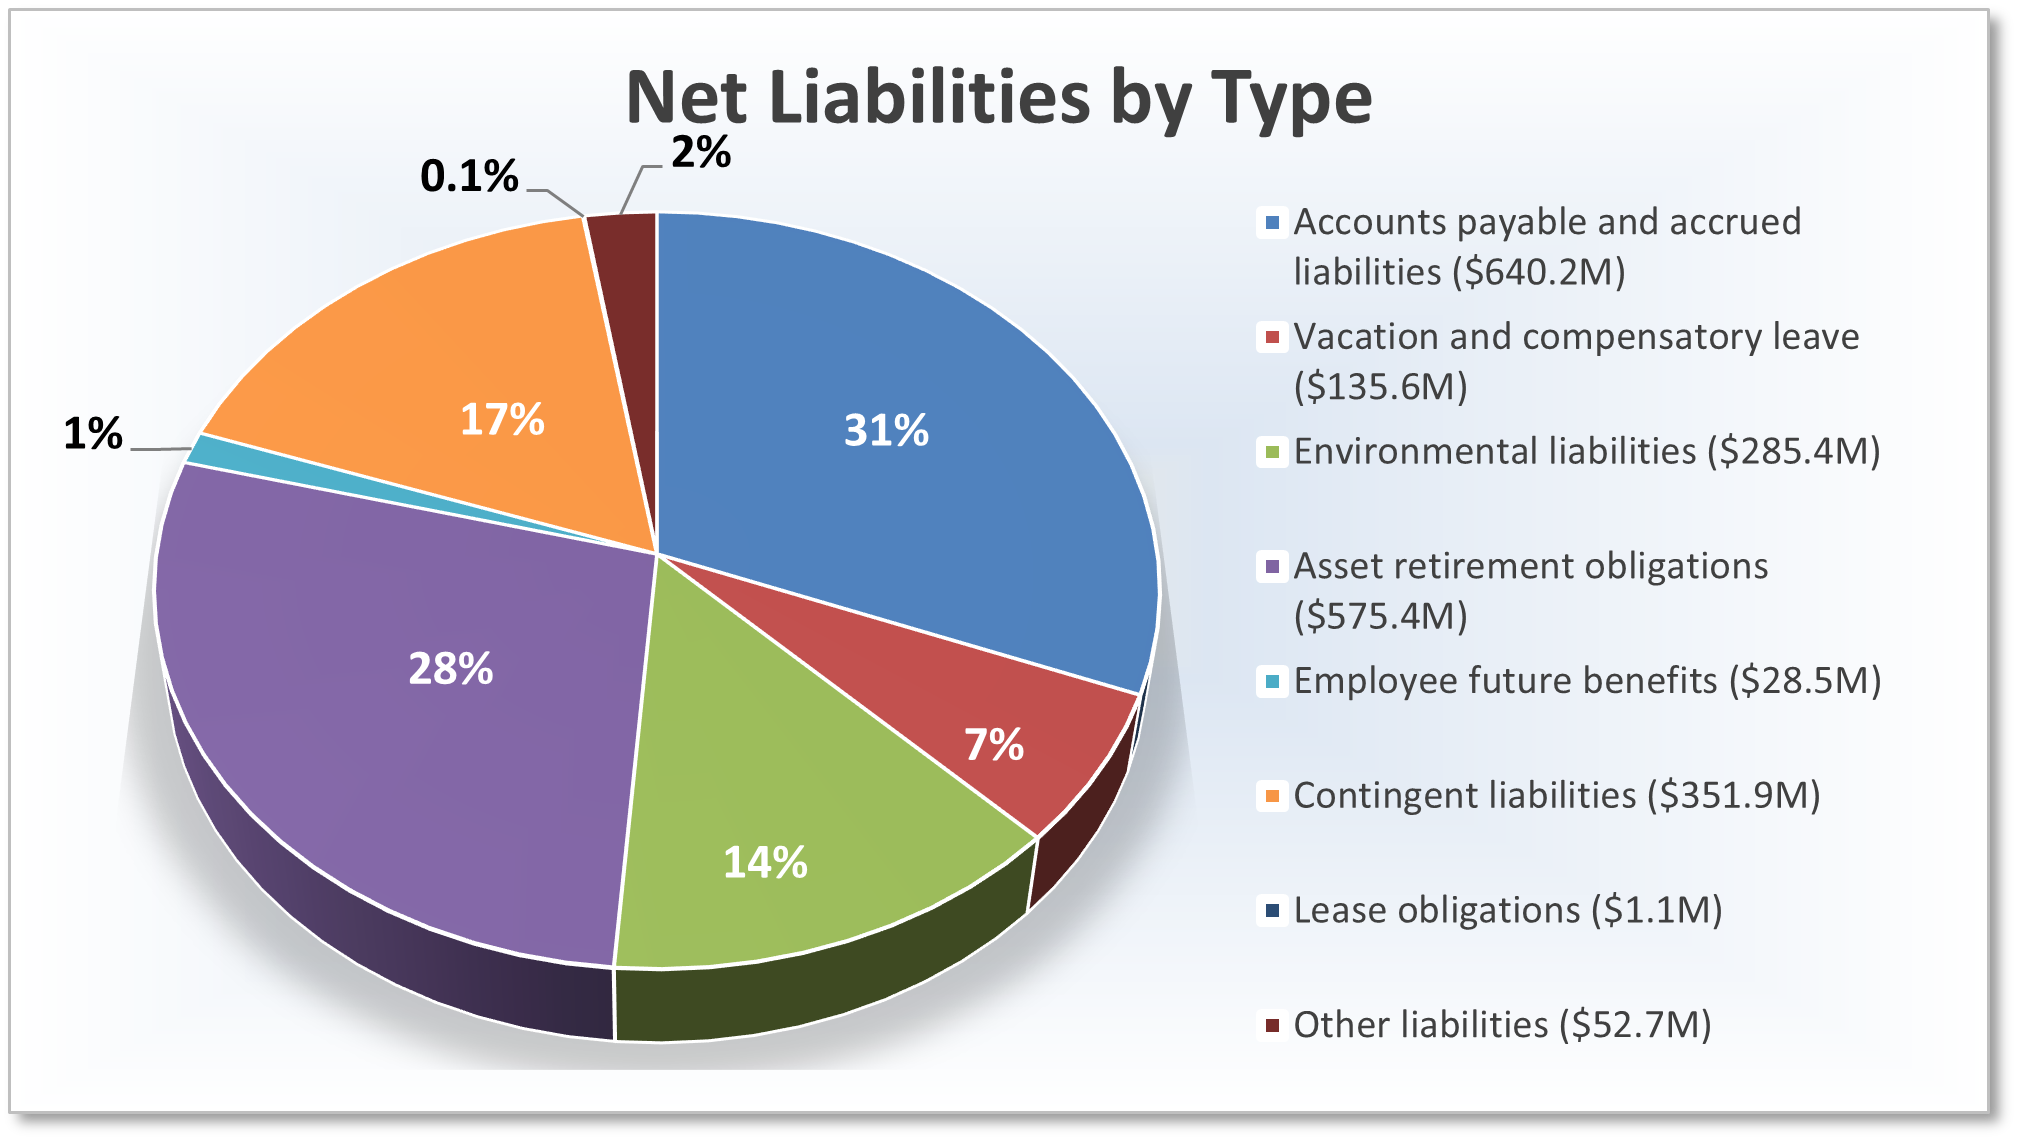 Net liabilities by type